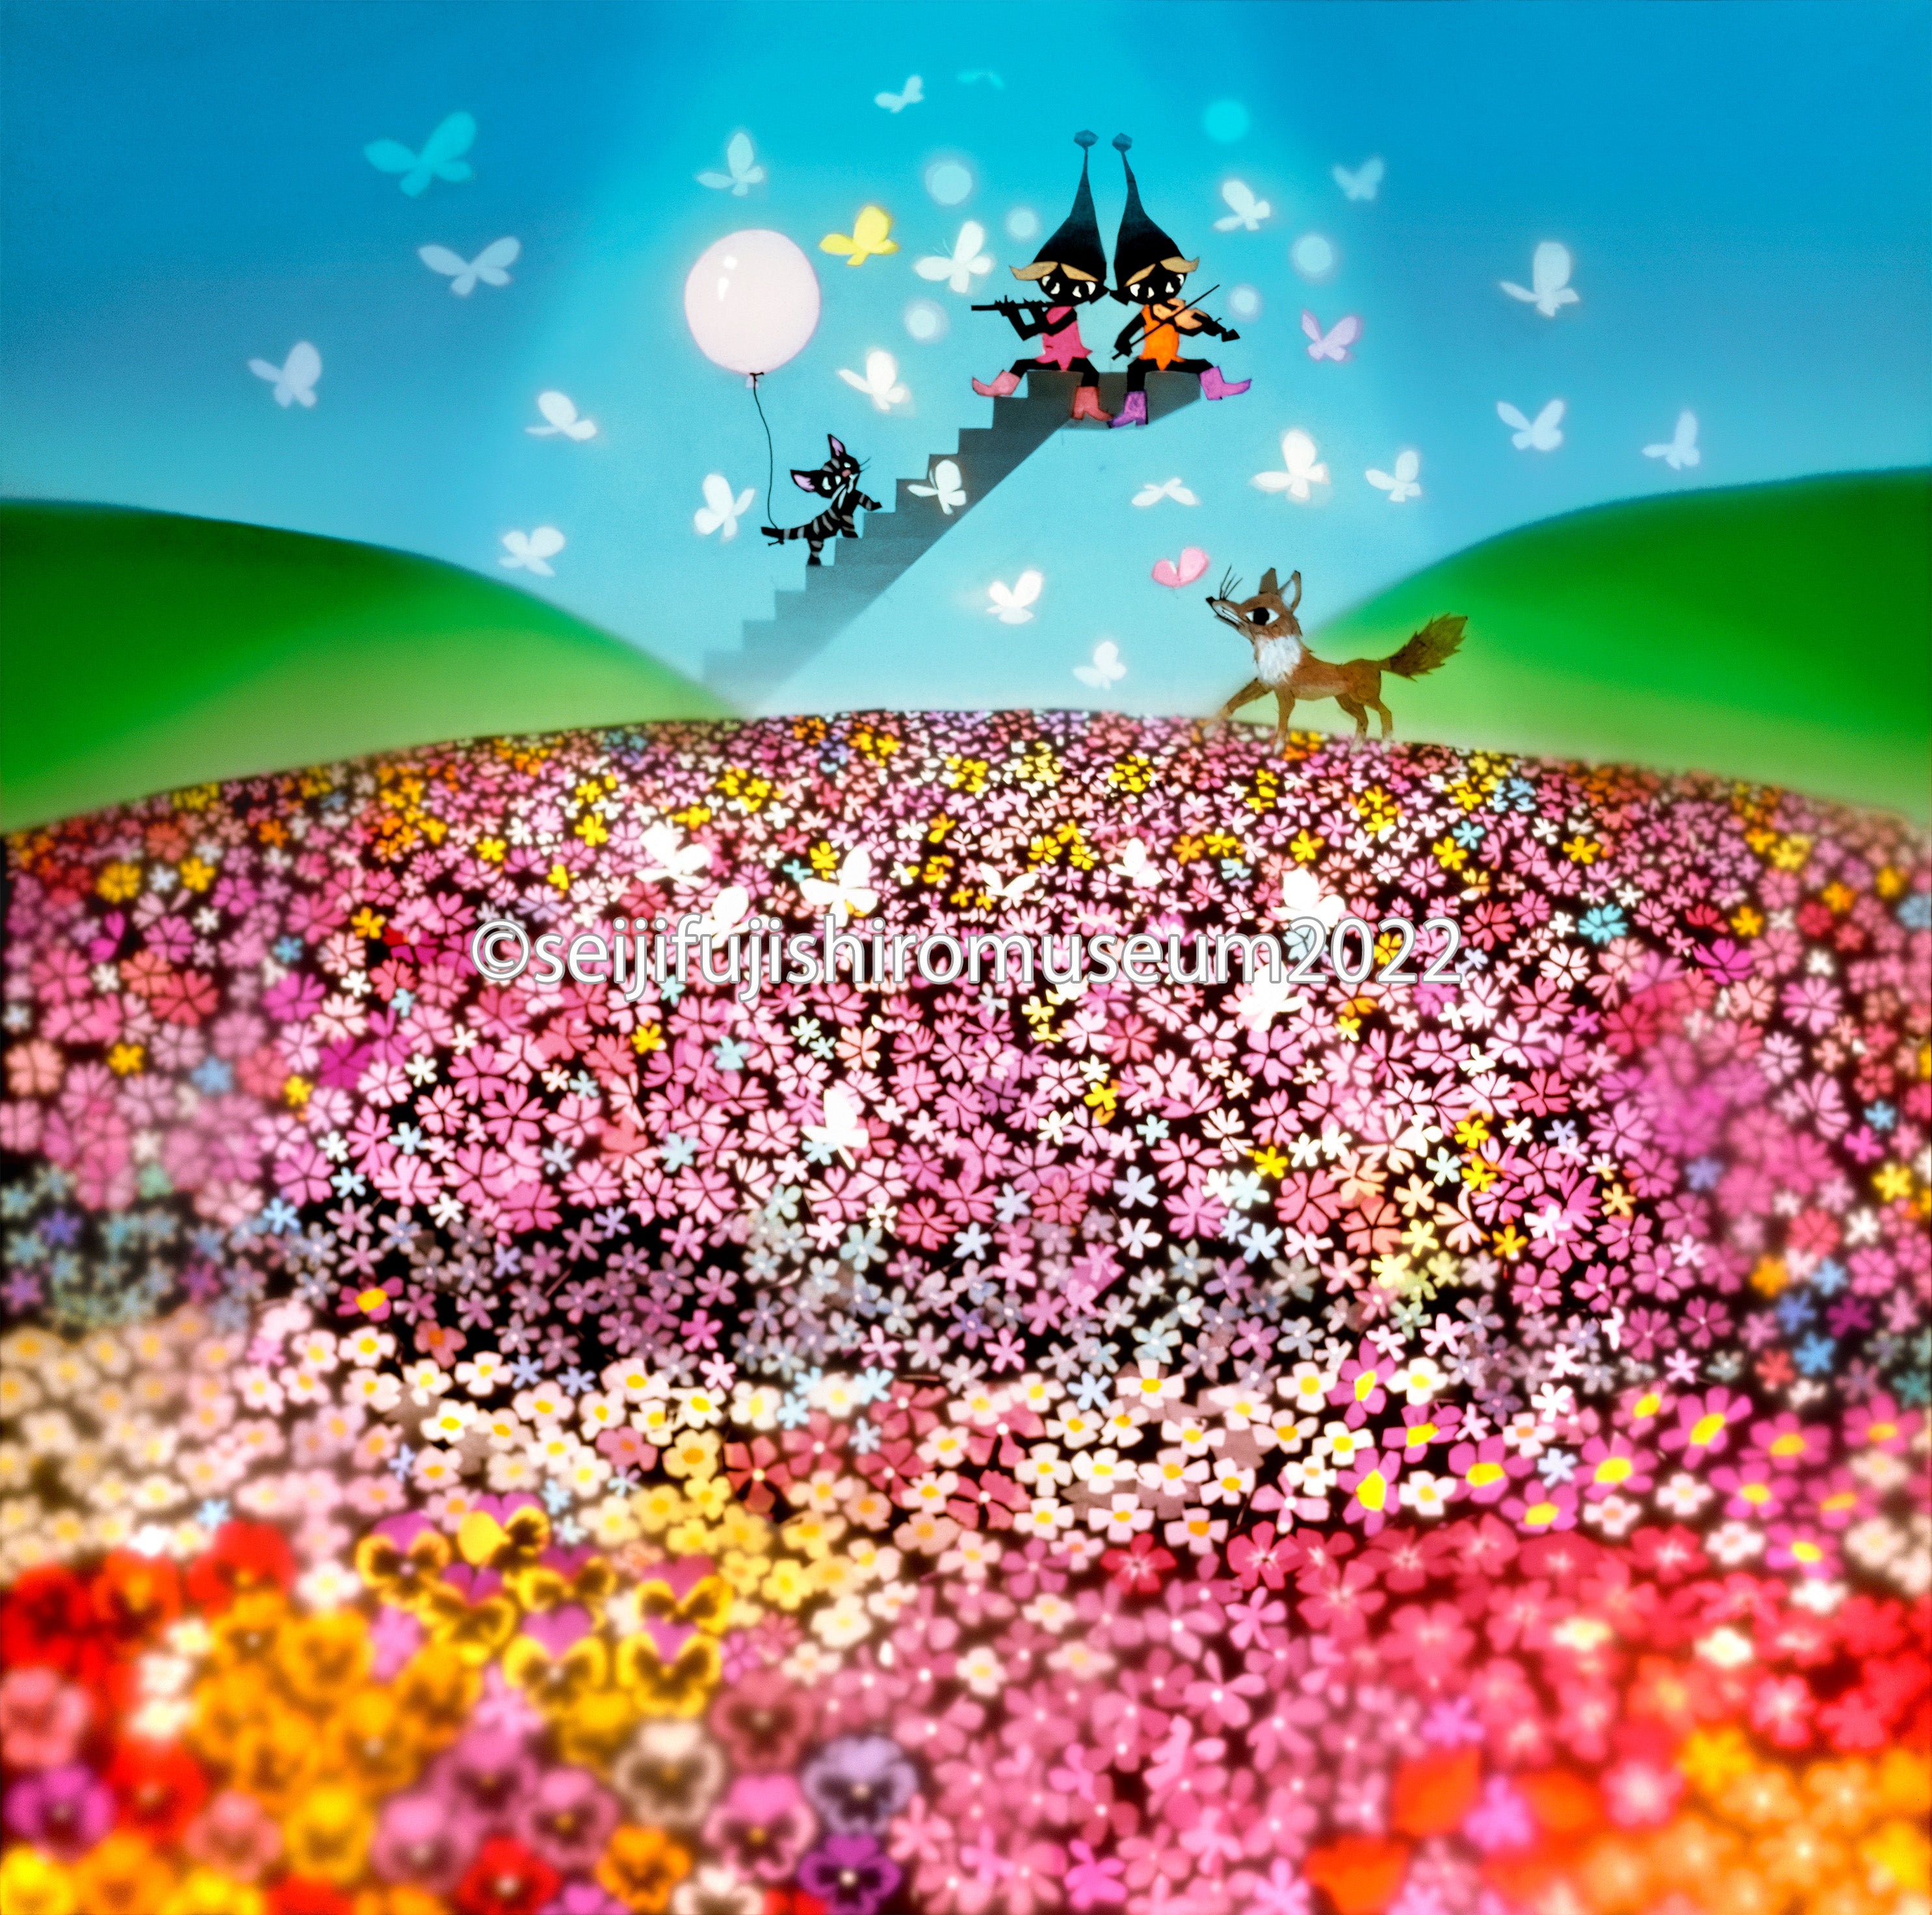 「花とこびと」FSM-21 ジクレー版画 – 藤城清治とラビの玉手箱